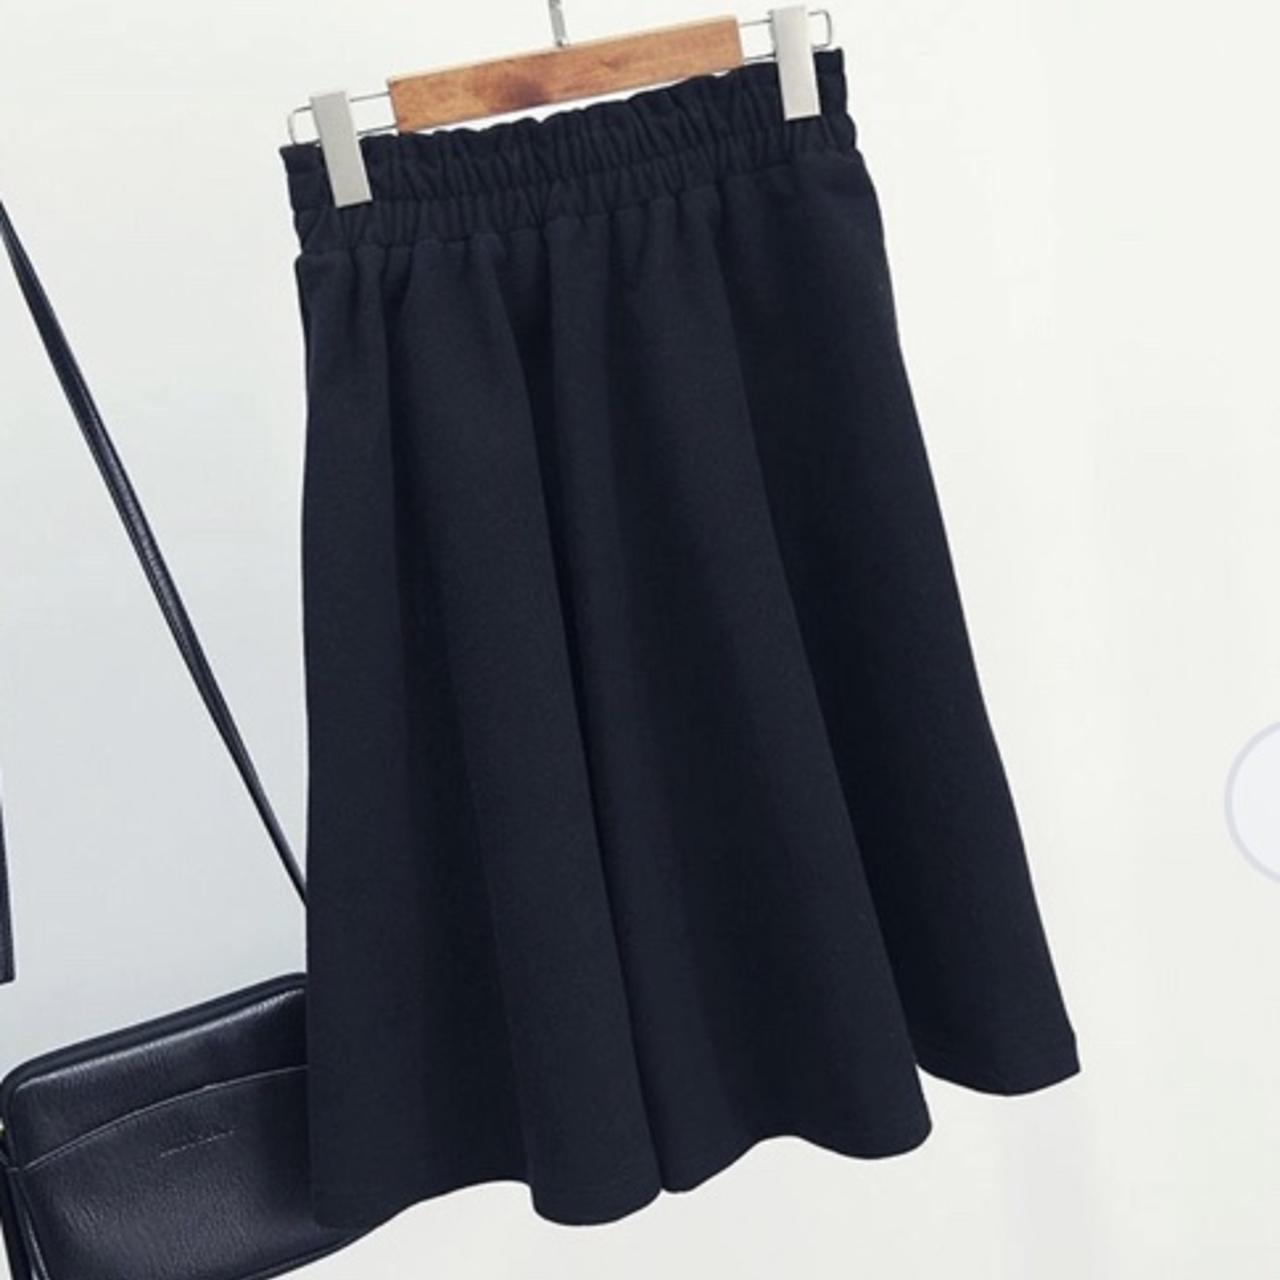 Stylenanda Women's Black Skirt (3)